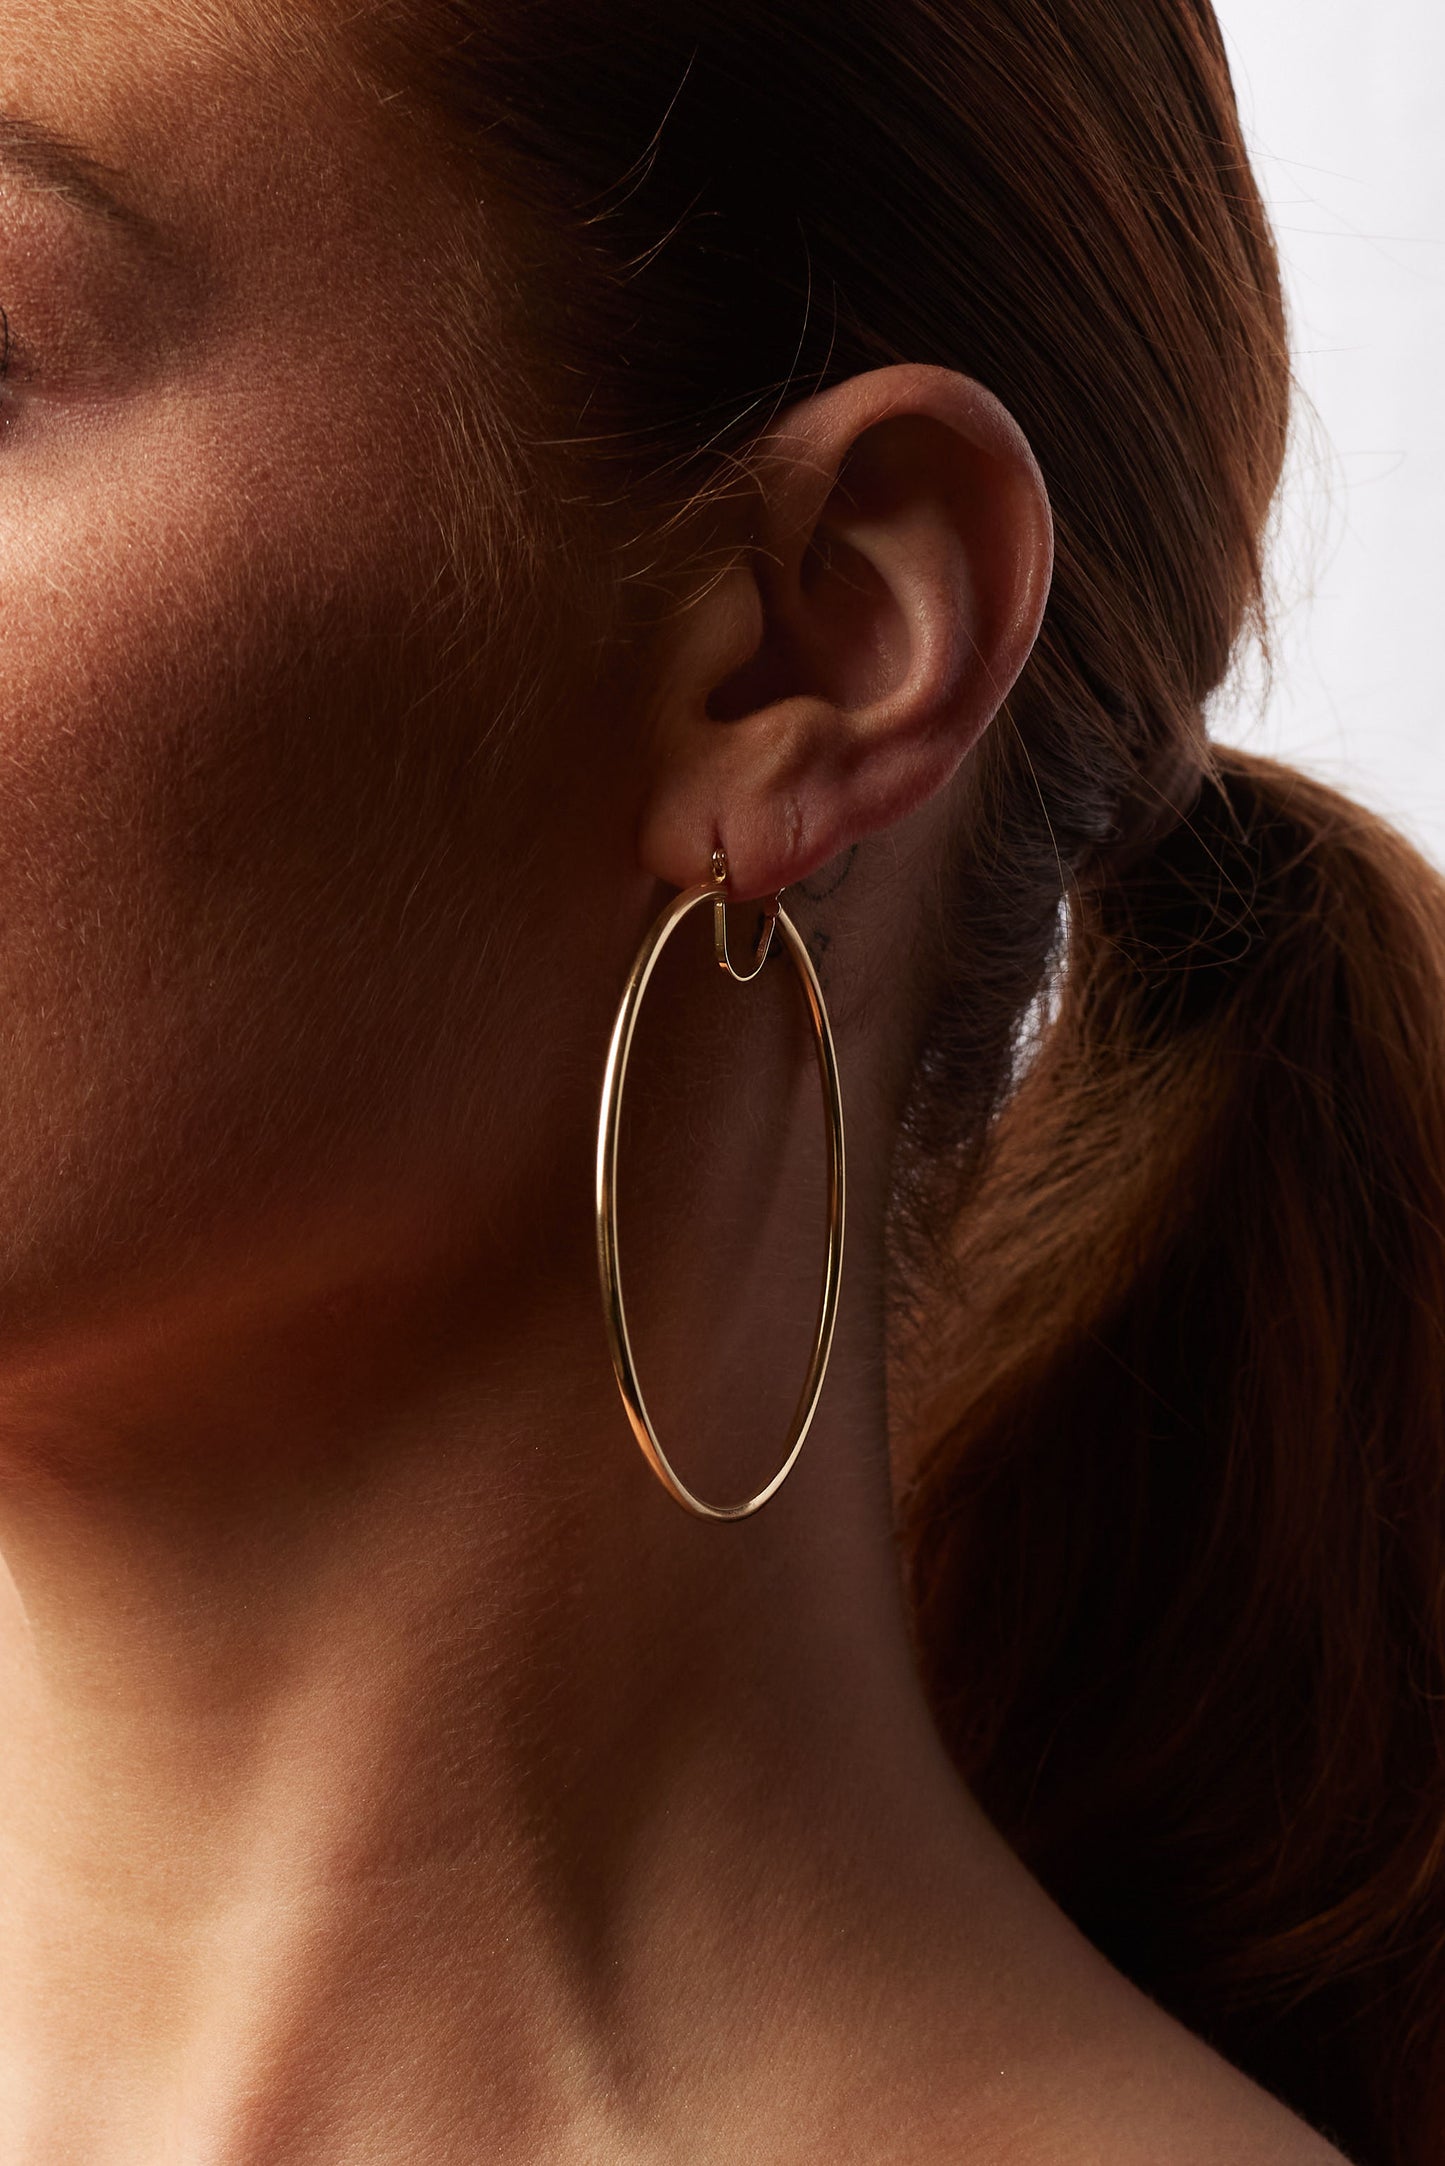 2.5" 14k Gold Hoop Earrings